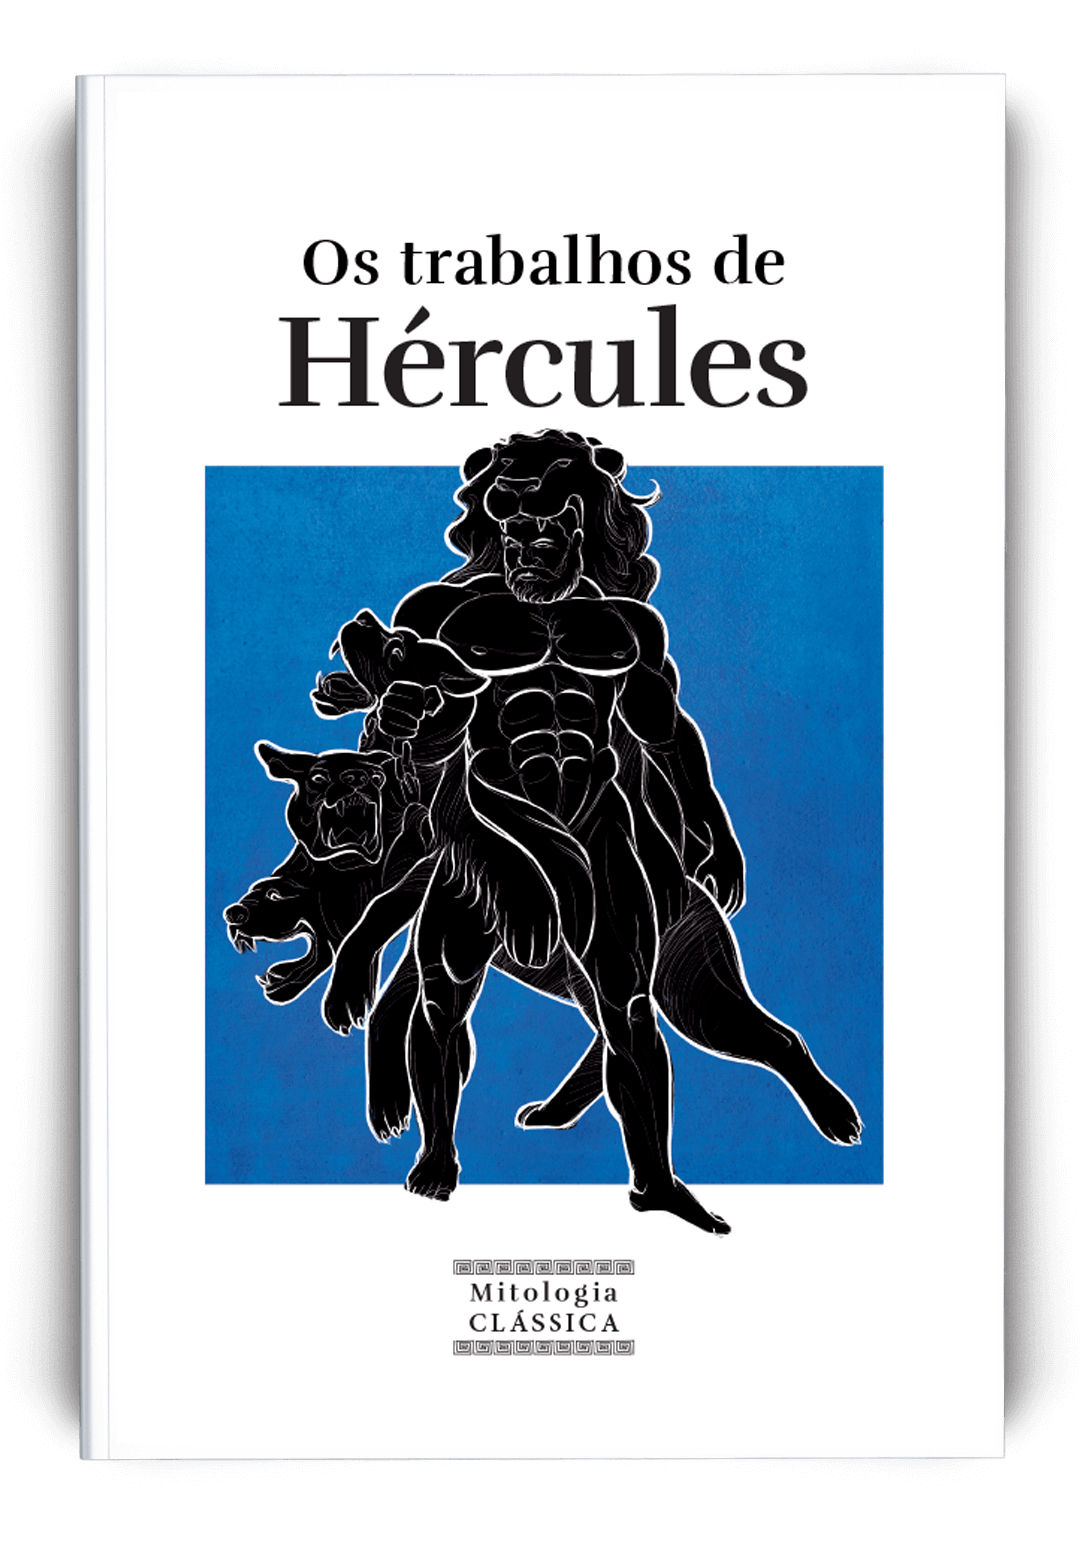 Os trabalhos de Hércules